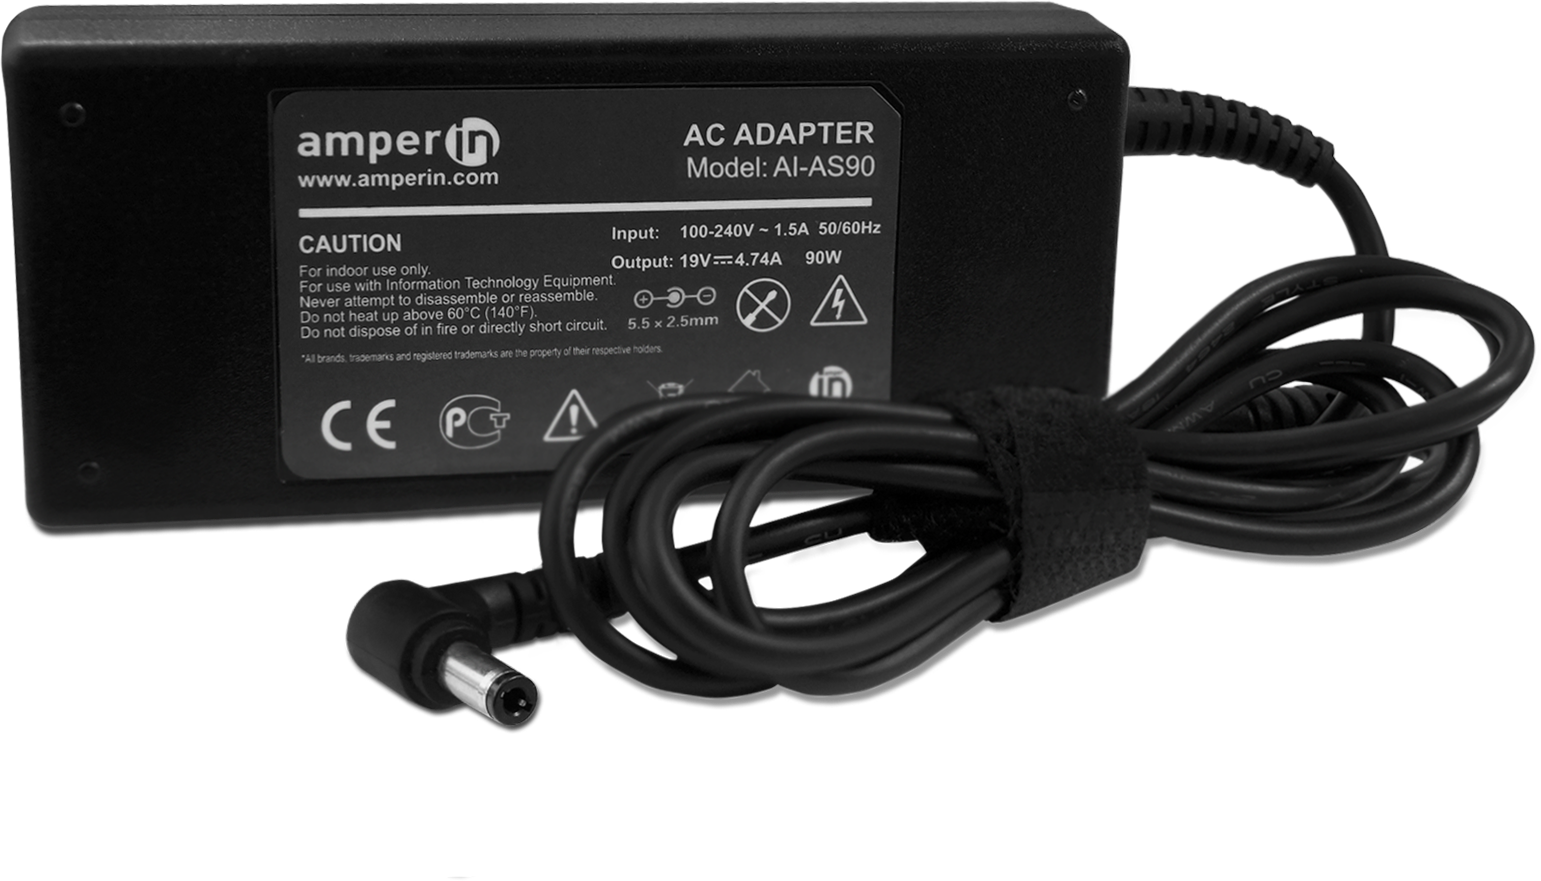 Блок питания (сетевой адаптер) Amperin AI-AS90 для ноутбуков Asus 19V 4.74A 90W 5.5x2.5 мм черный, с сетевым кабелем